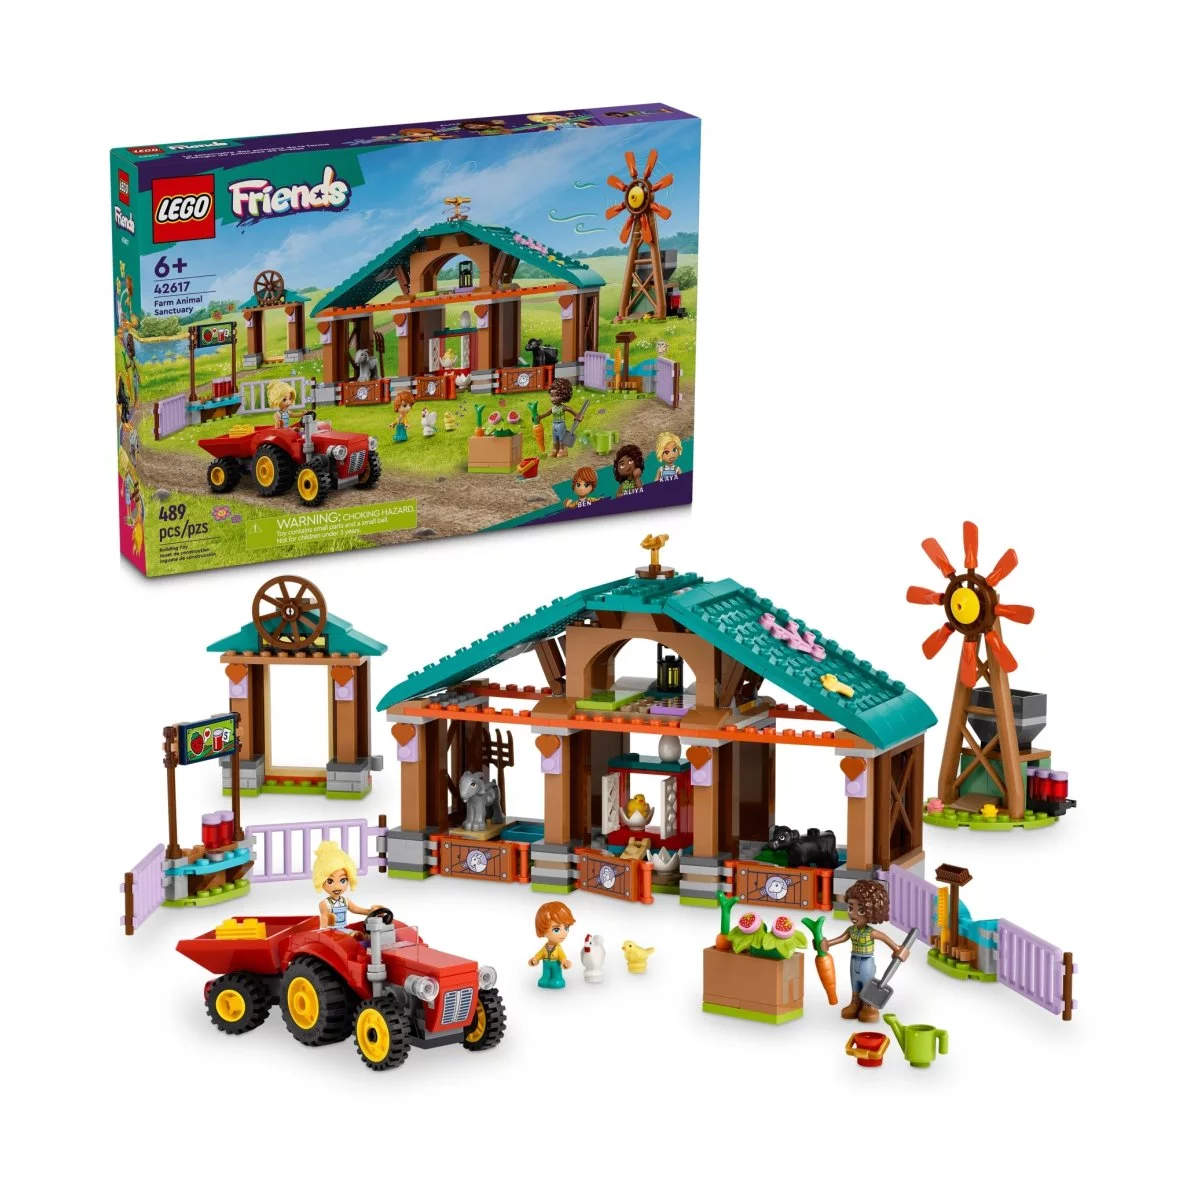 Конструктор Lego Home Friends Farm Animal Sanctuary 42617, 489 деталей lego friends осенний хлев для телят фермерская игрушка с животными